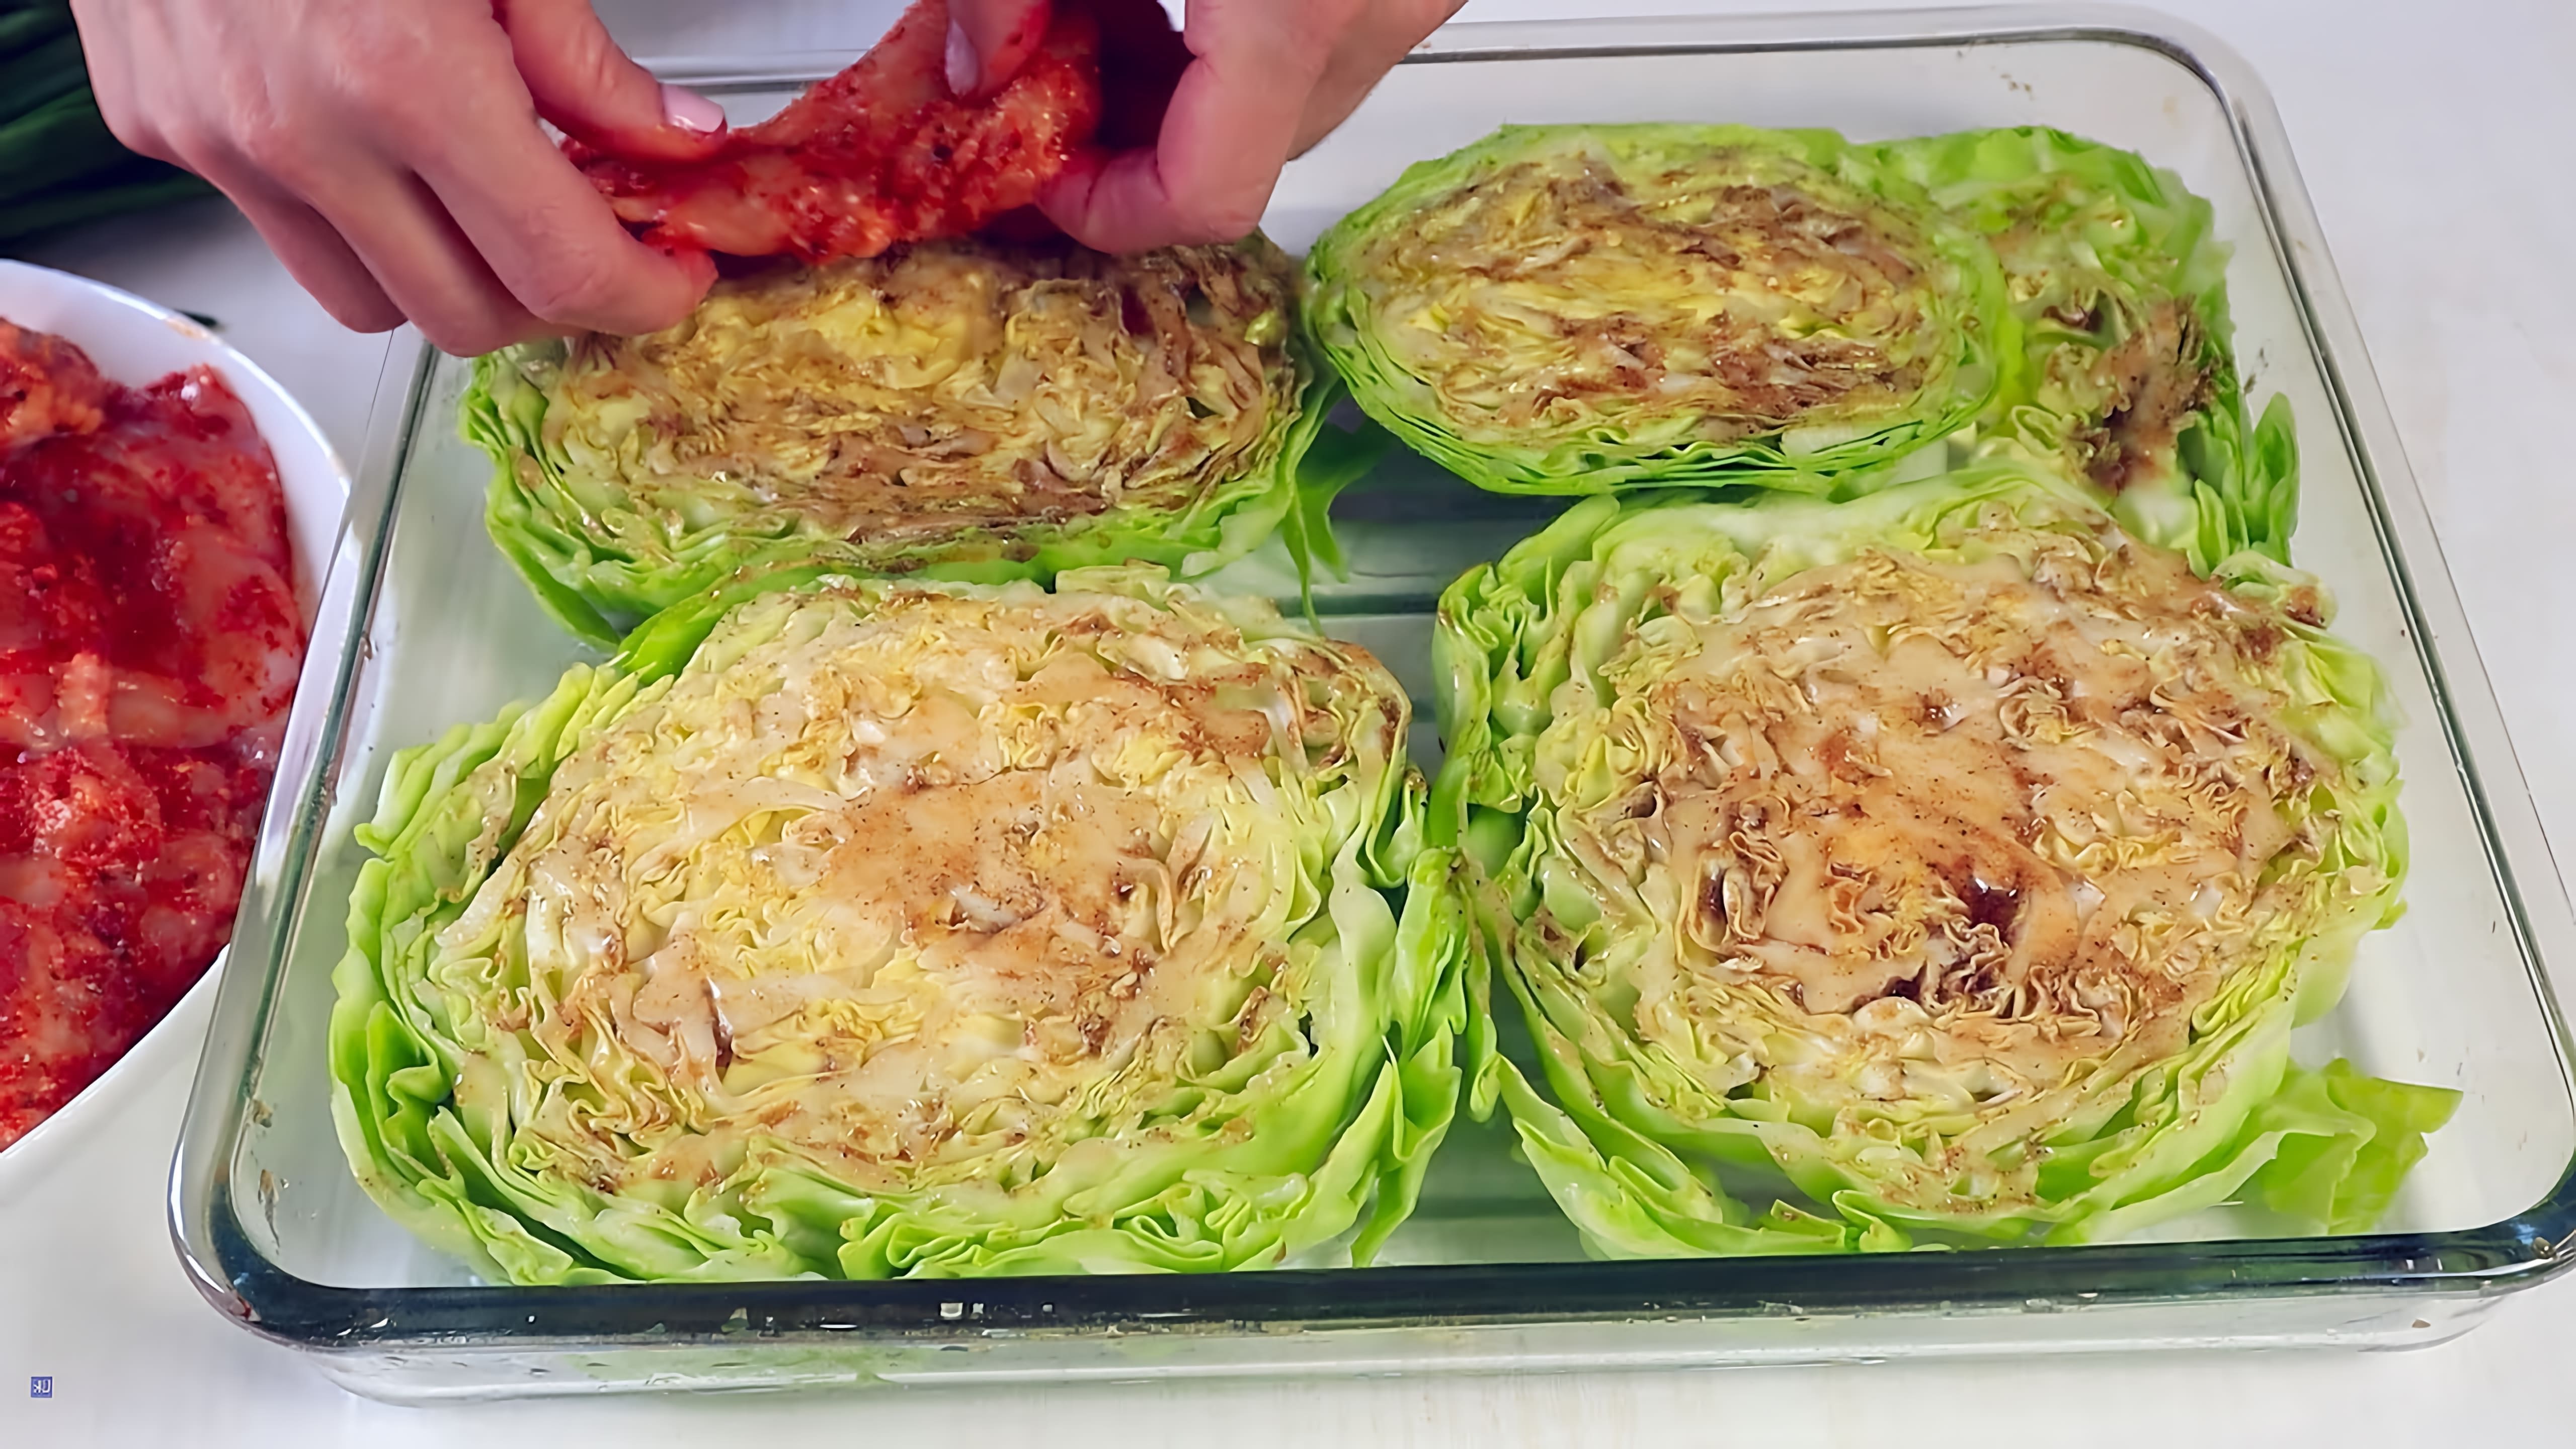 В этом видео демонстрируется простой и быстрый рецепт ужина или обеда из капусты и курицы